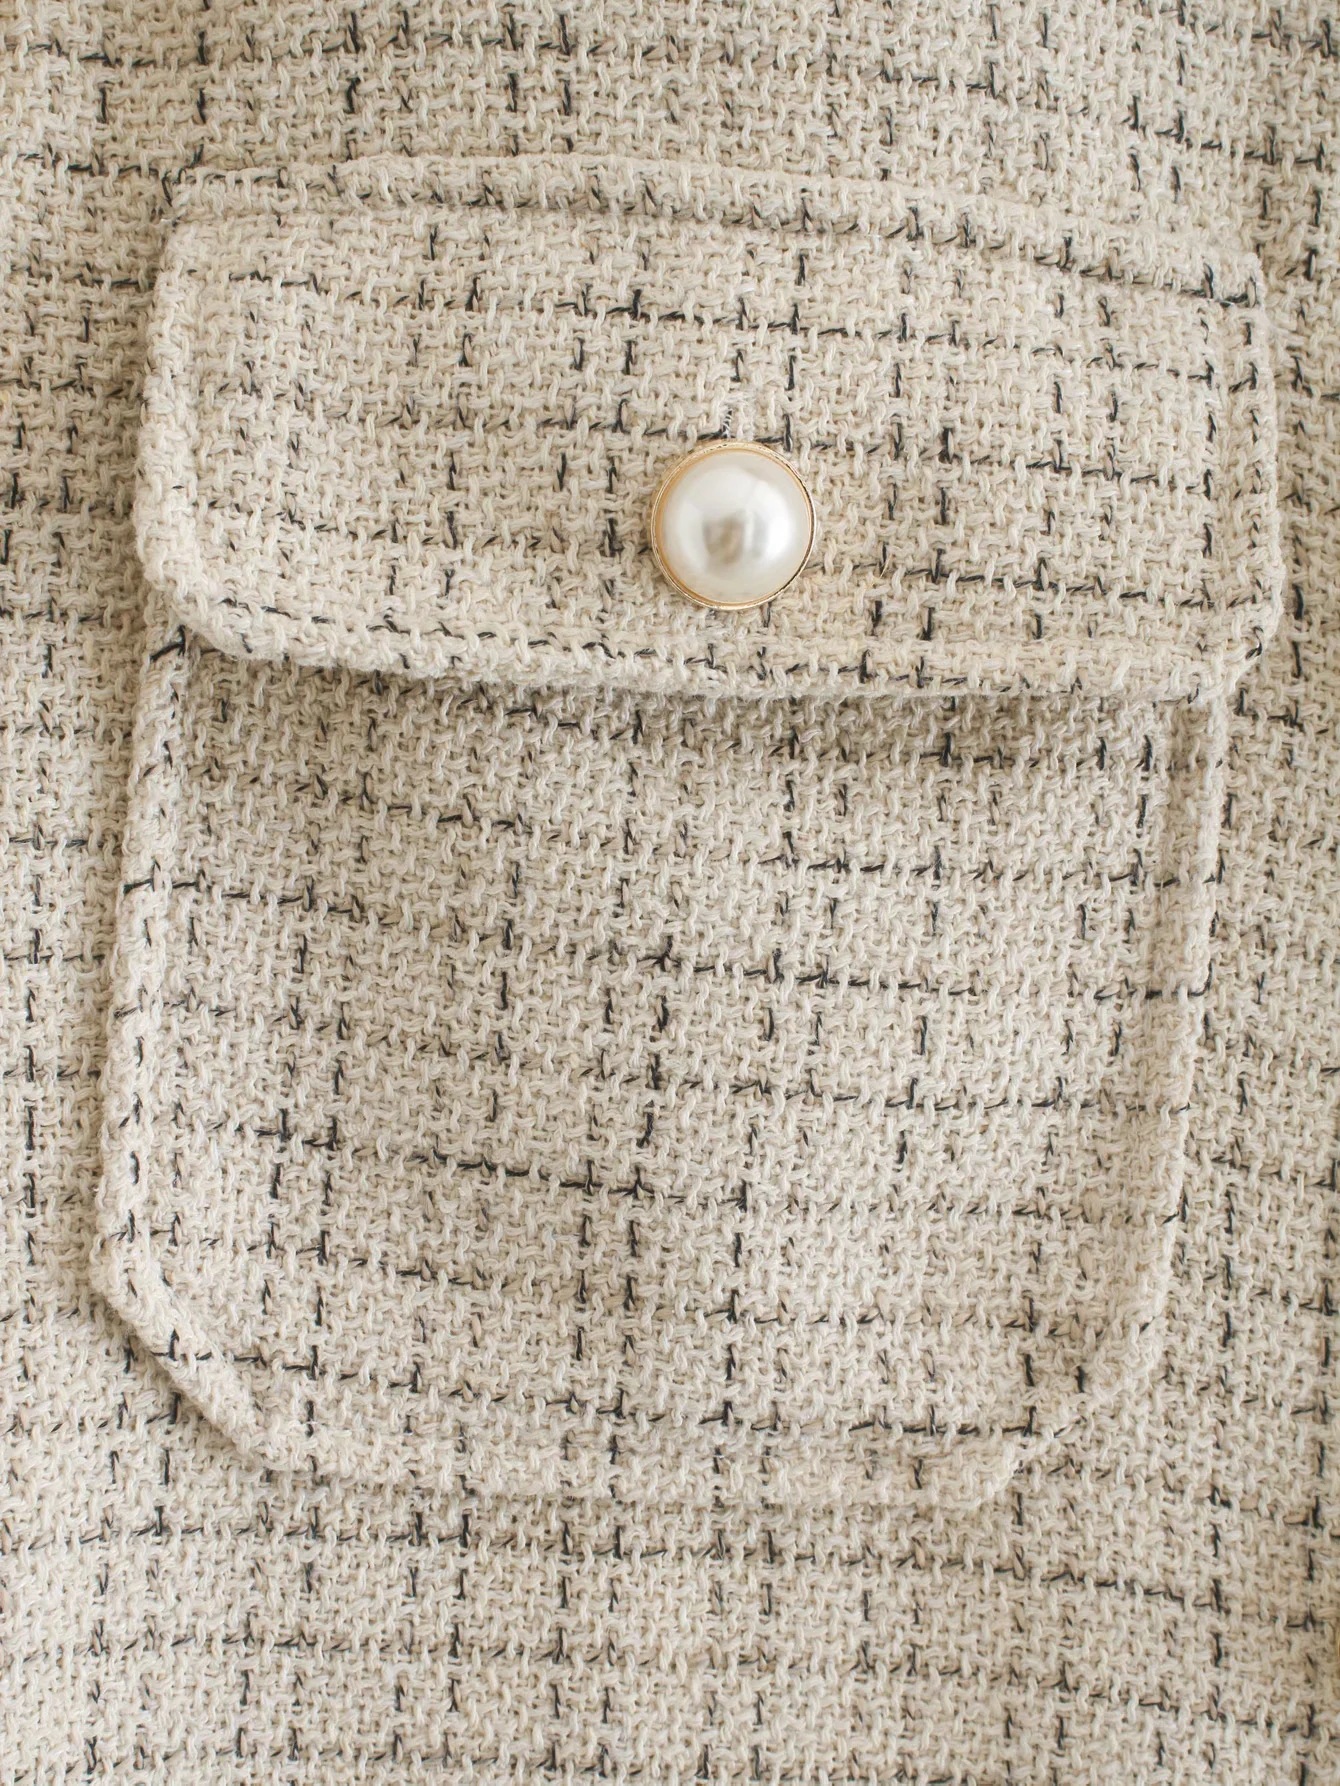 Chaqueta retro de lana con hebilla de perla NSAC14321